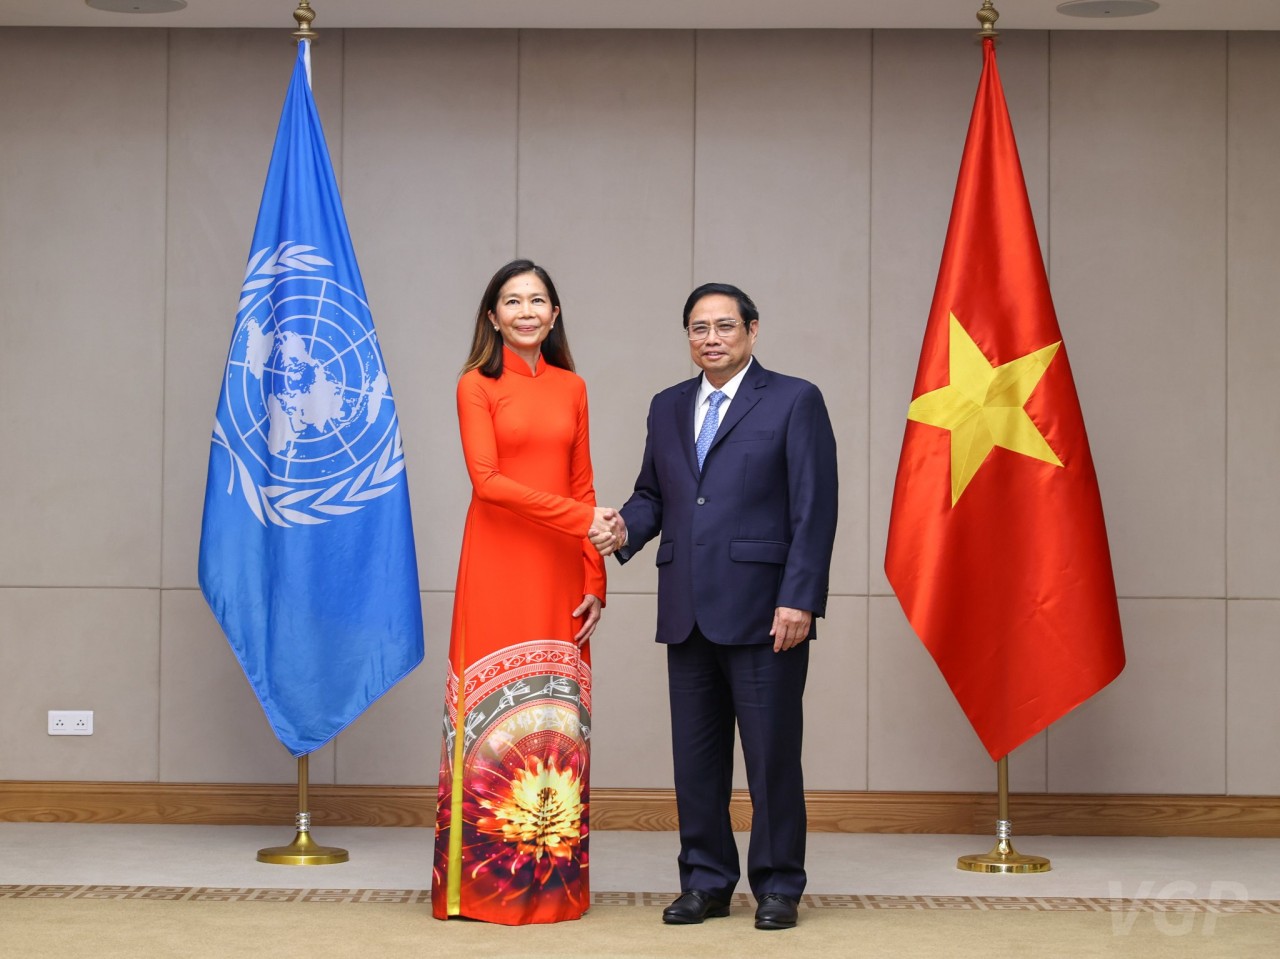 New UN Resident Coordinator in Vietnam Presents Credentials